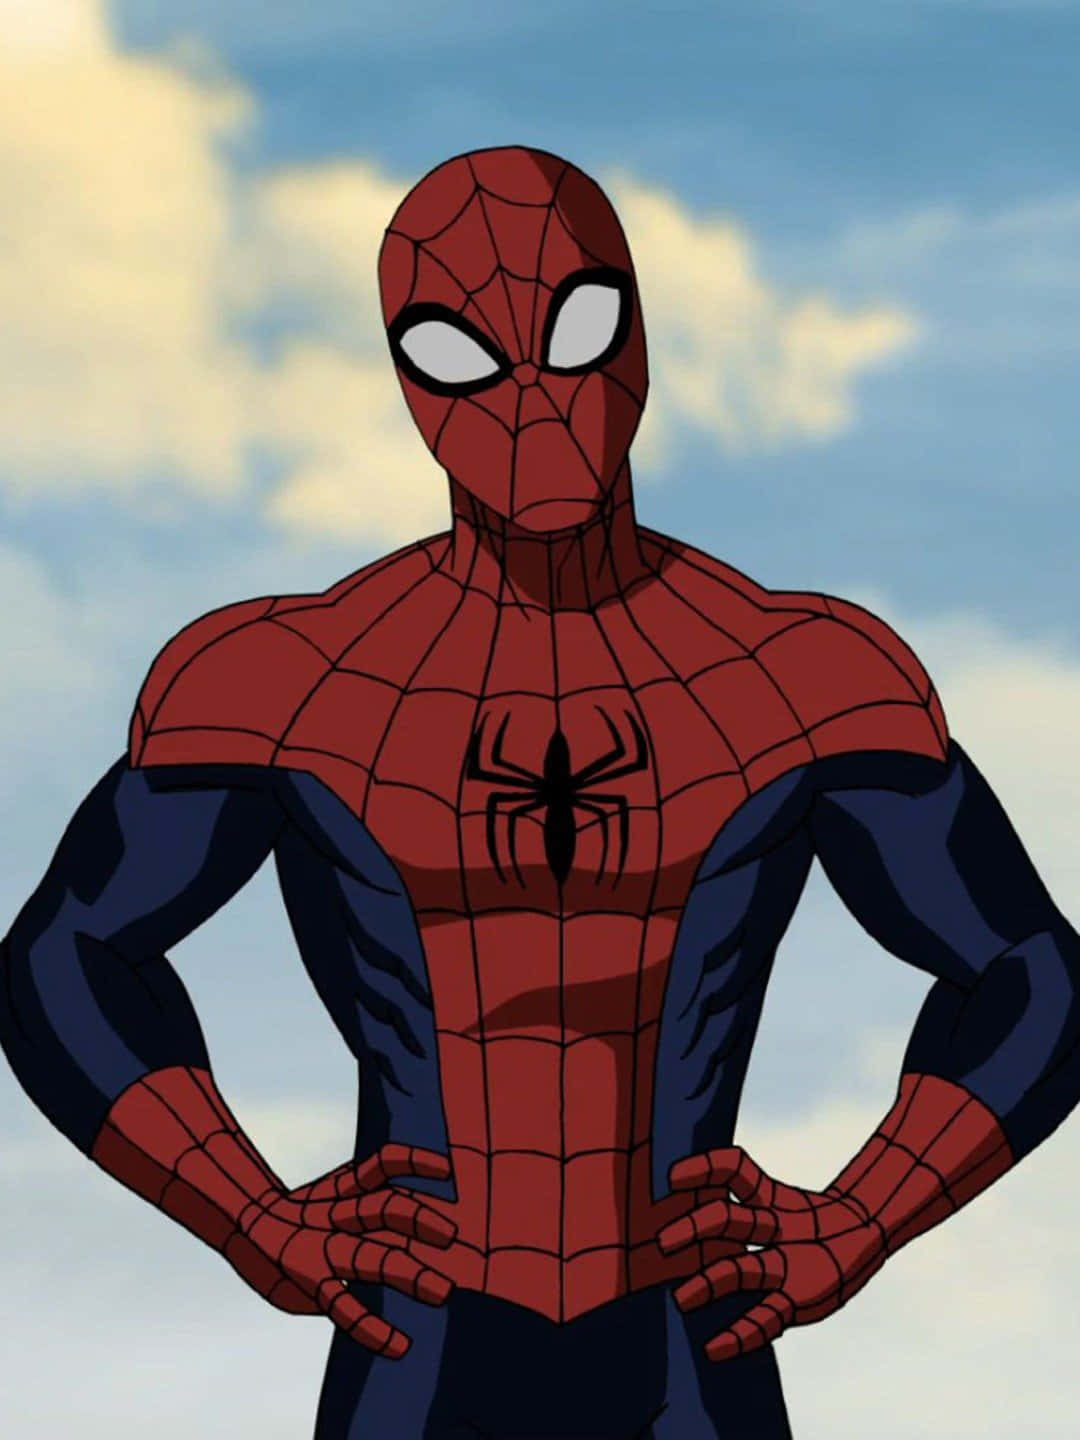 Fondode Pantalla De Spiderman Animado. Fondo de pantalla